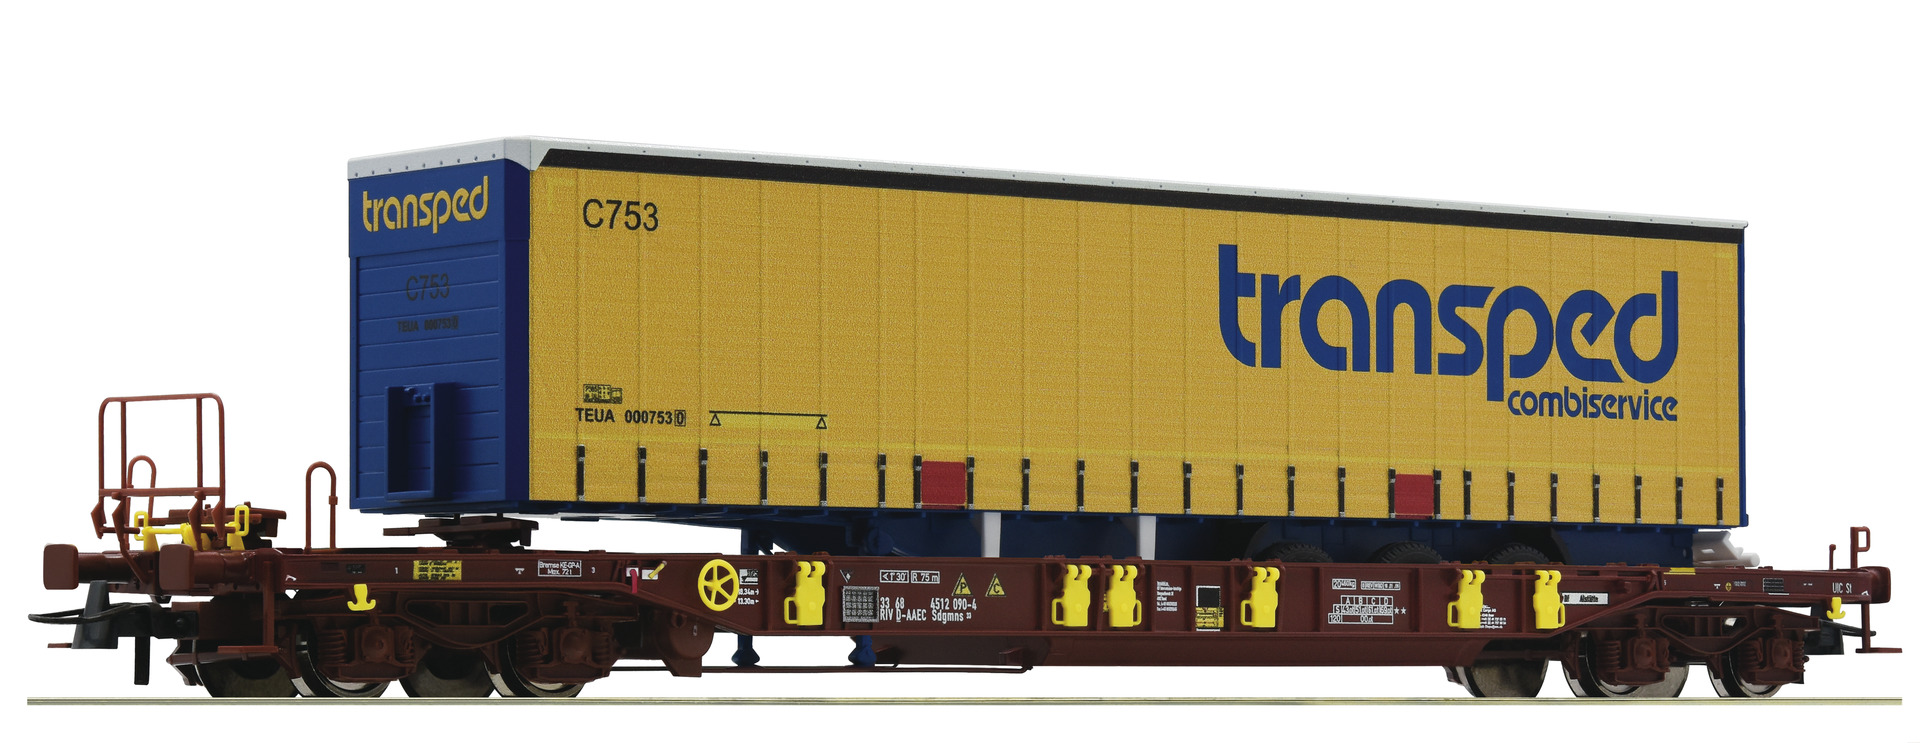 roco-76223-Taschenwagen-T3-transped-combiservice